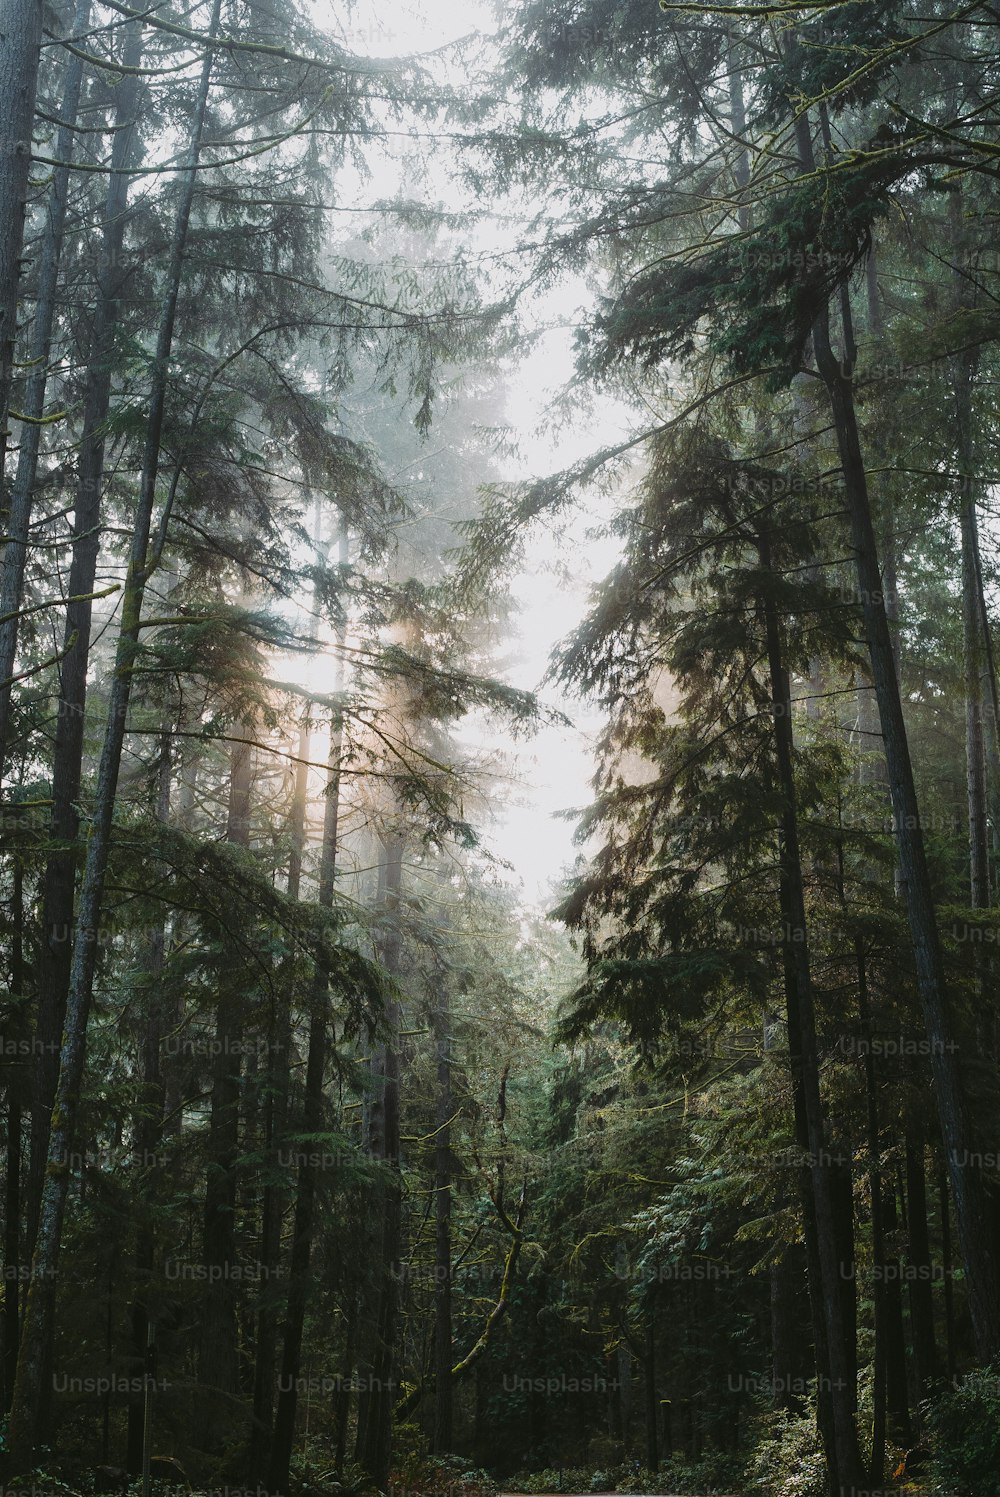 uma estrada no meio de uma floresta cercada por árvores altas